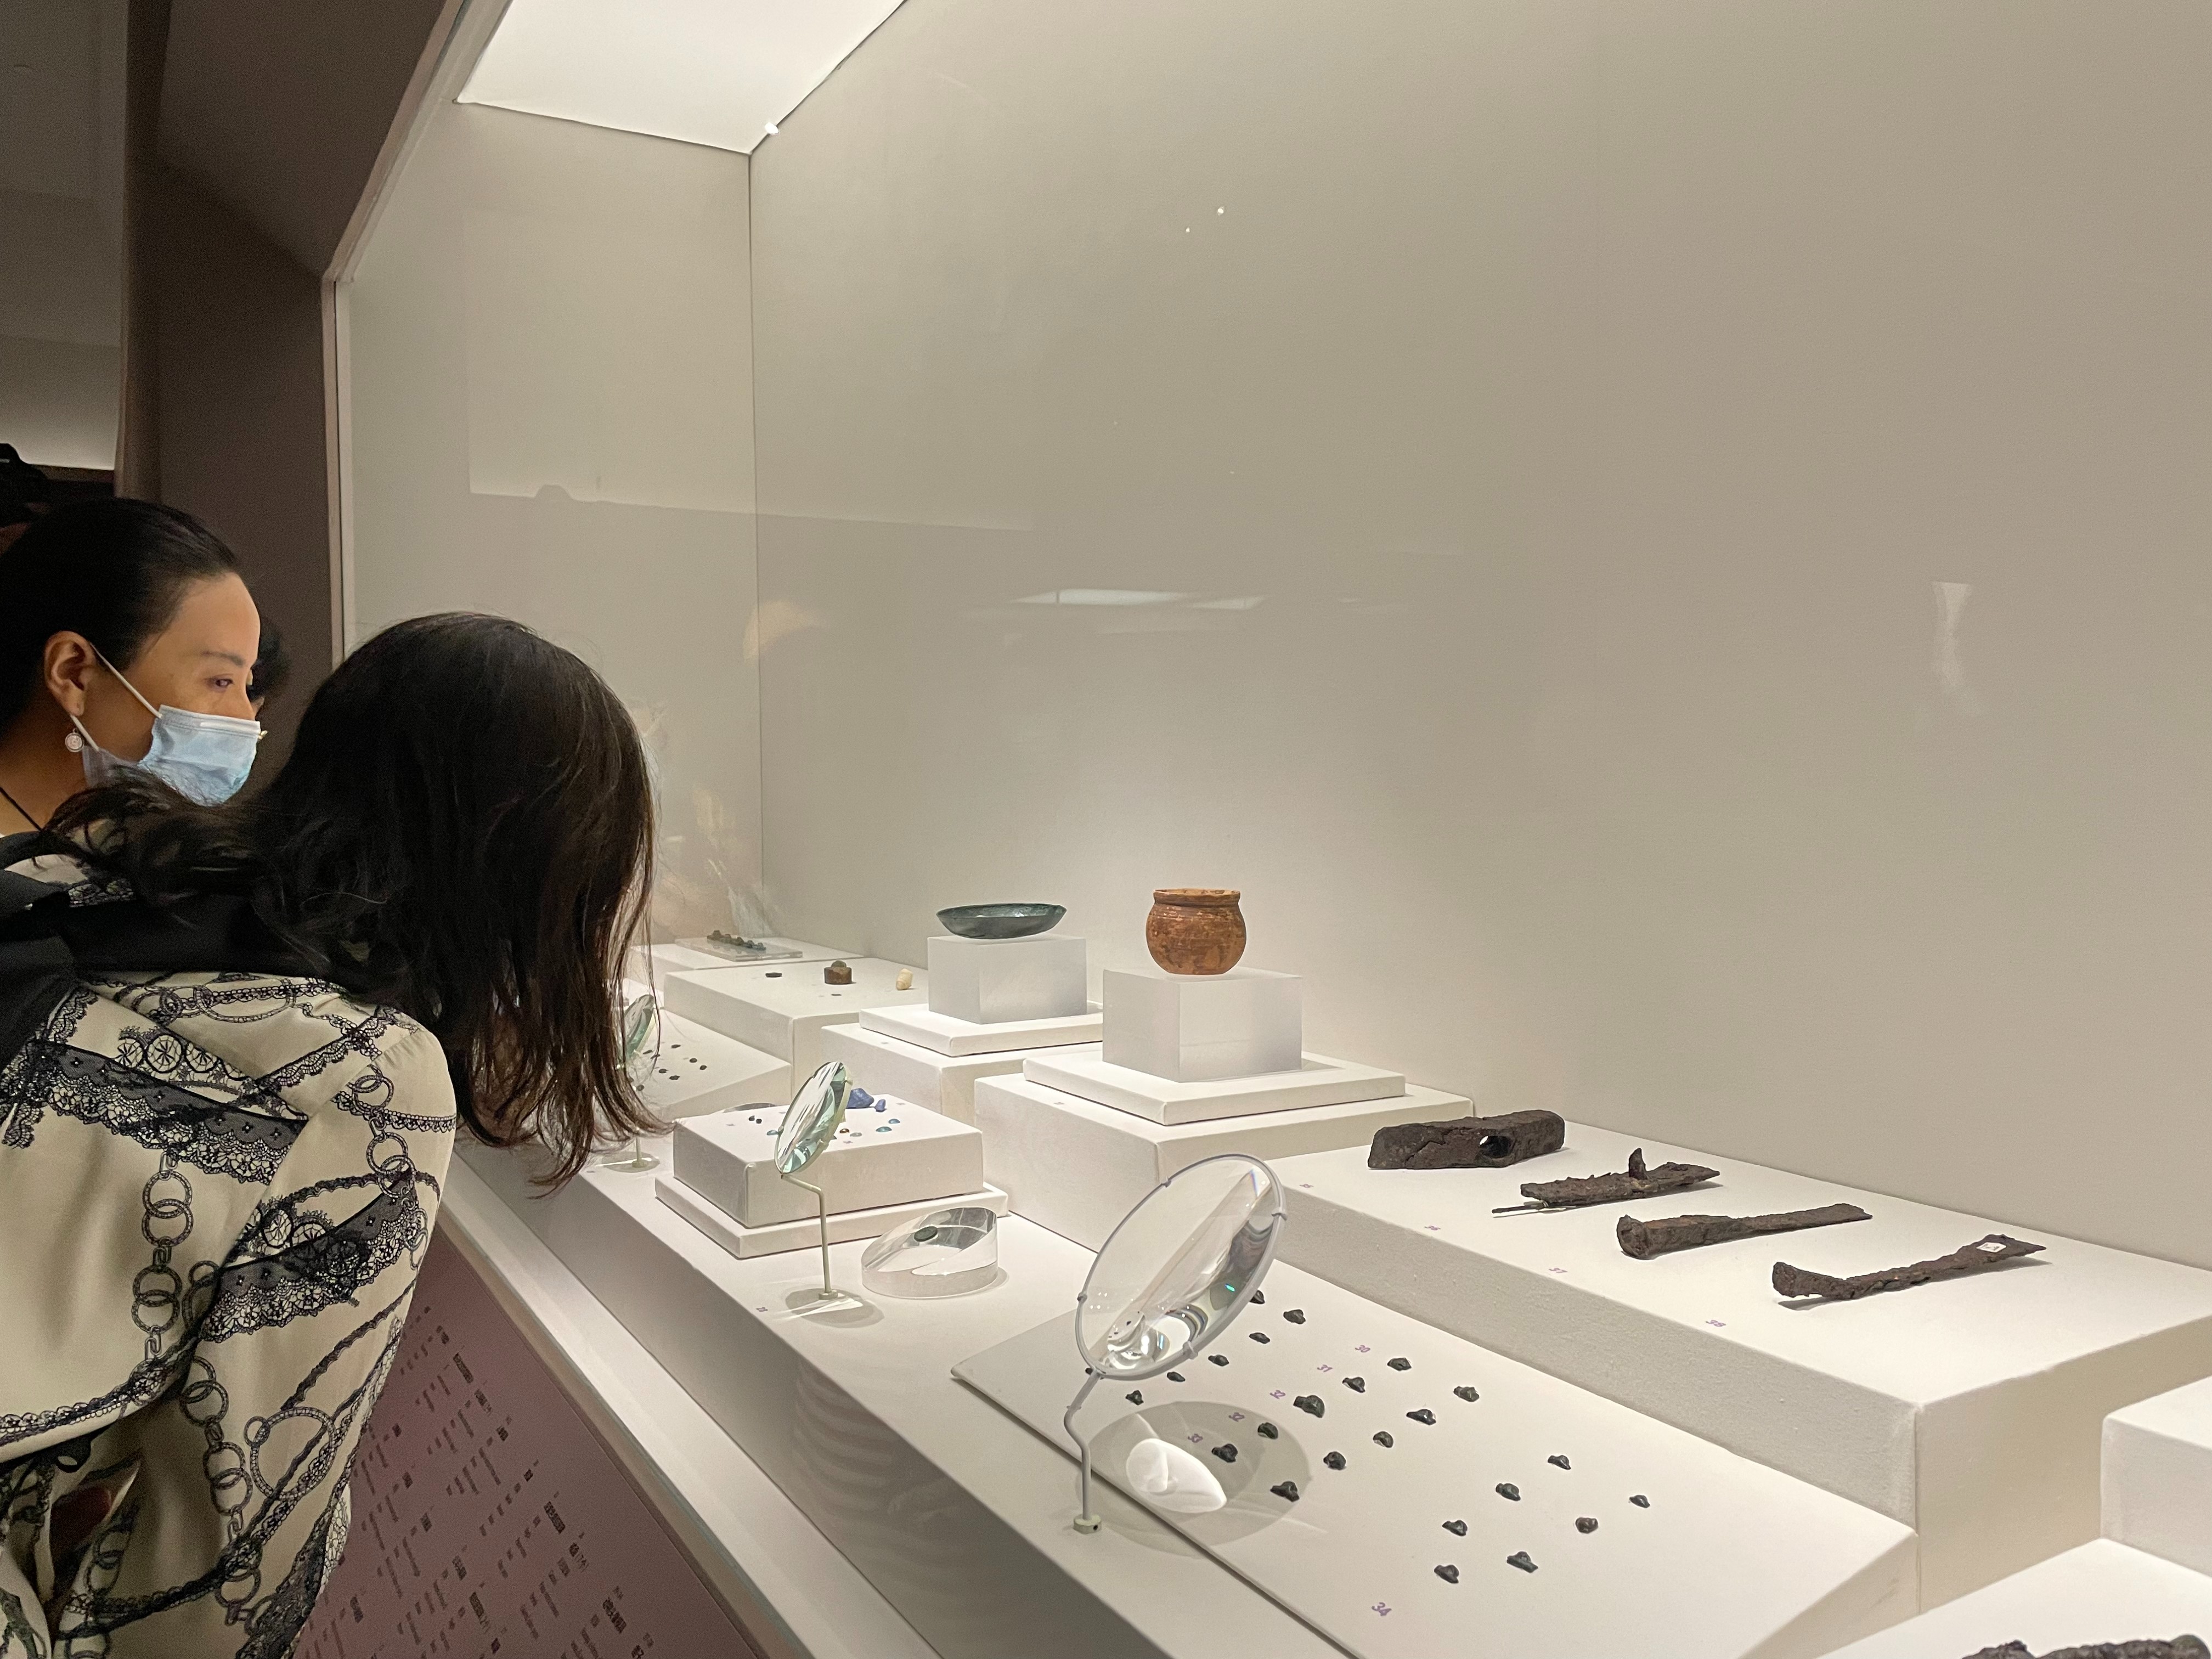 现场 |古罗马文明光耀再现 503件珍贵文物在国家博物馆展出